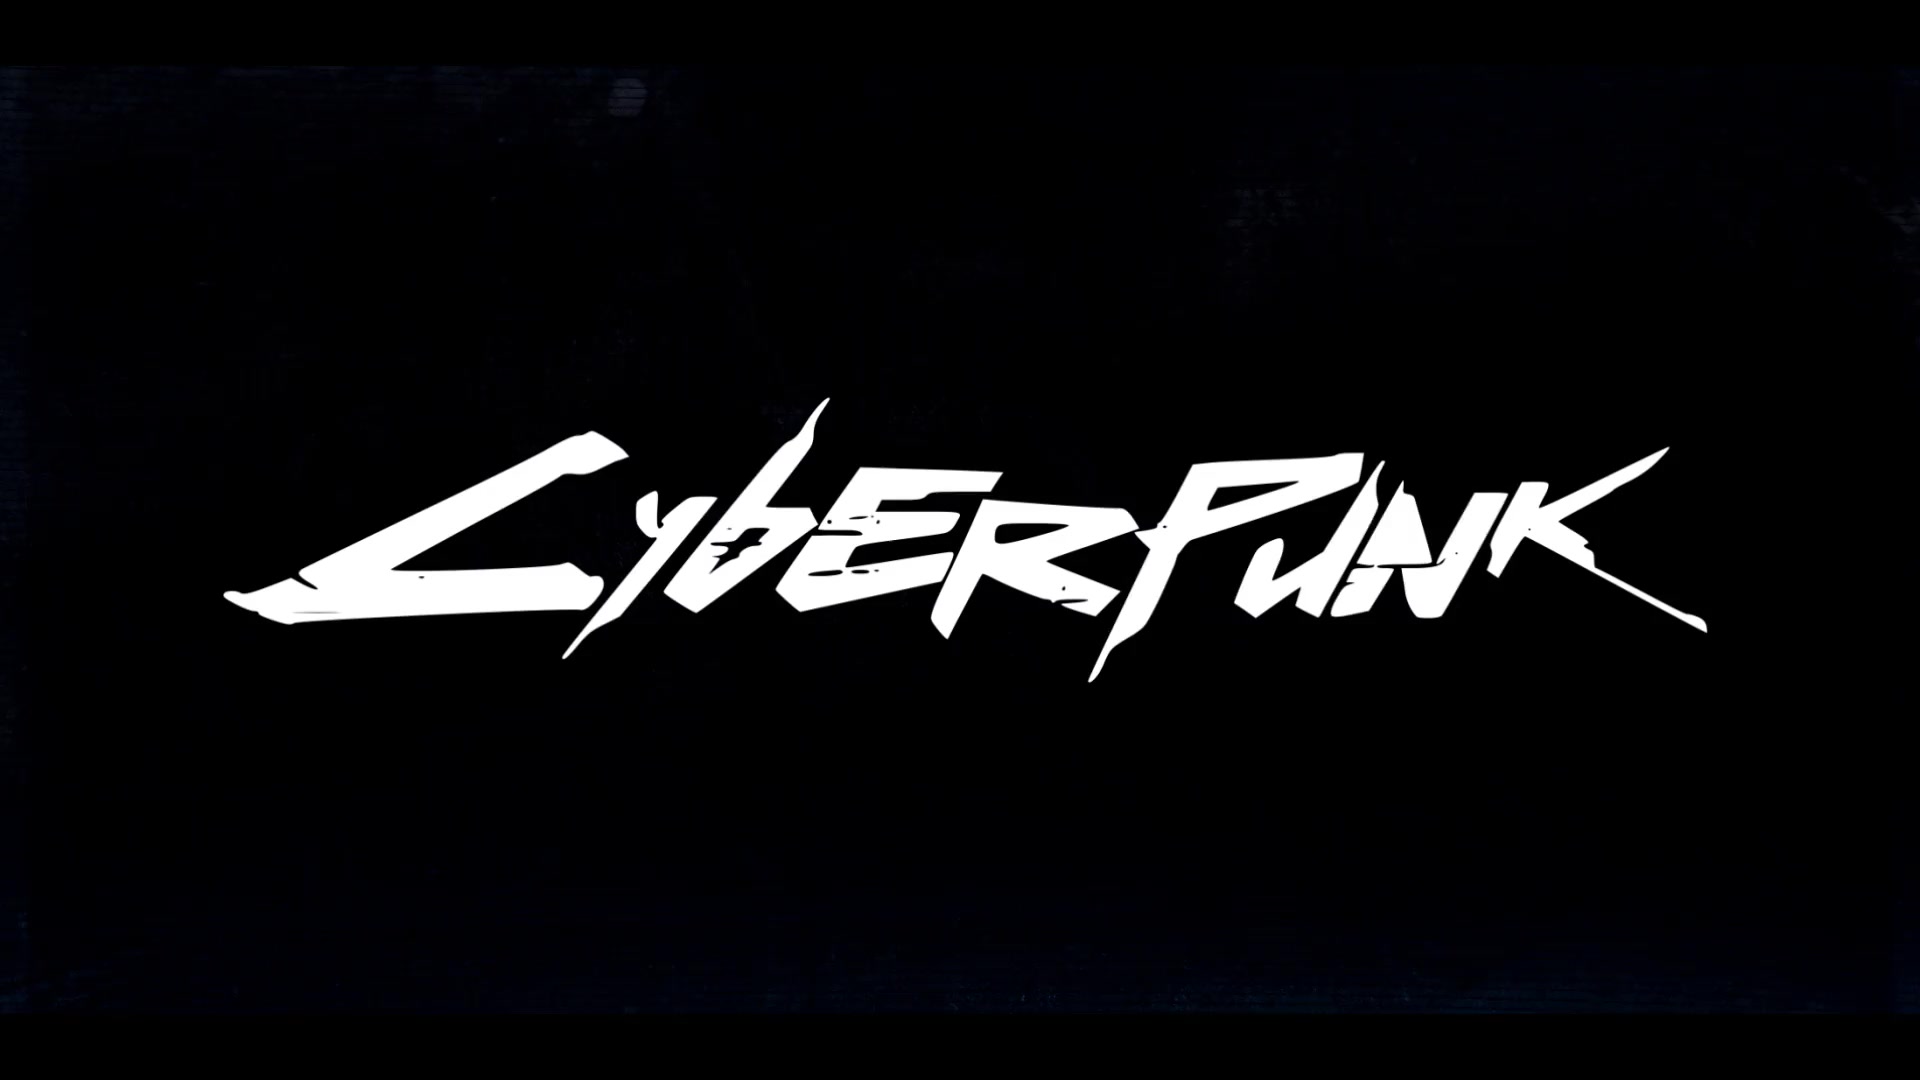 Cyberpunk logo ae фото 107